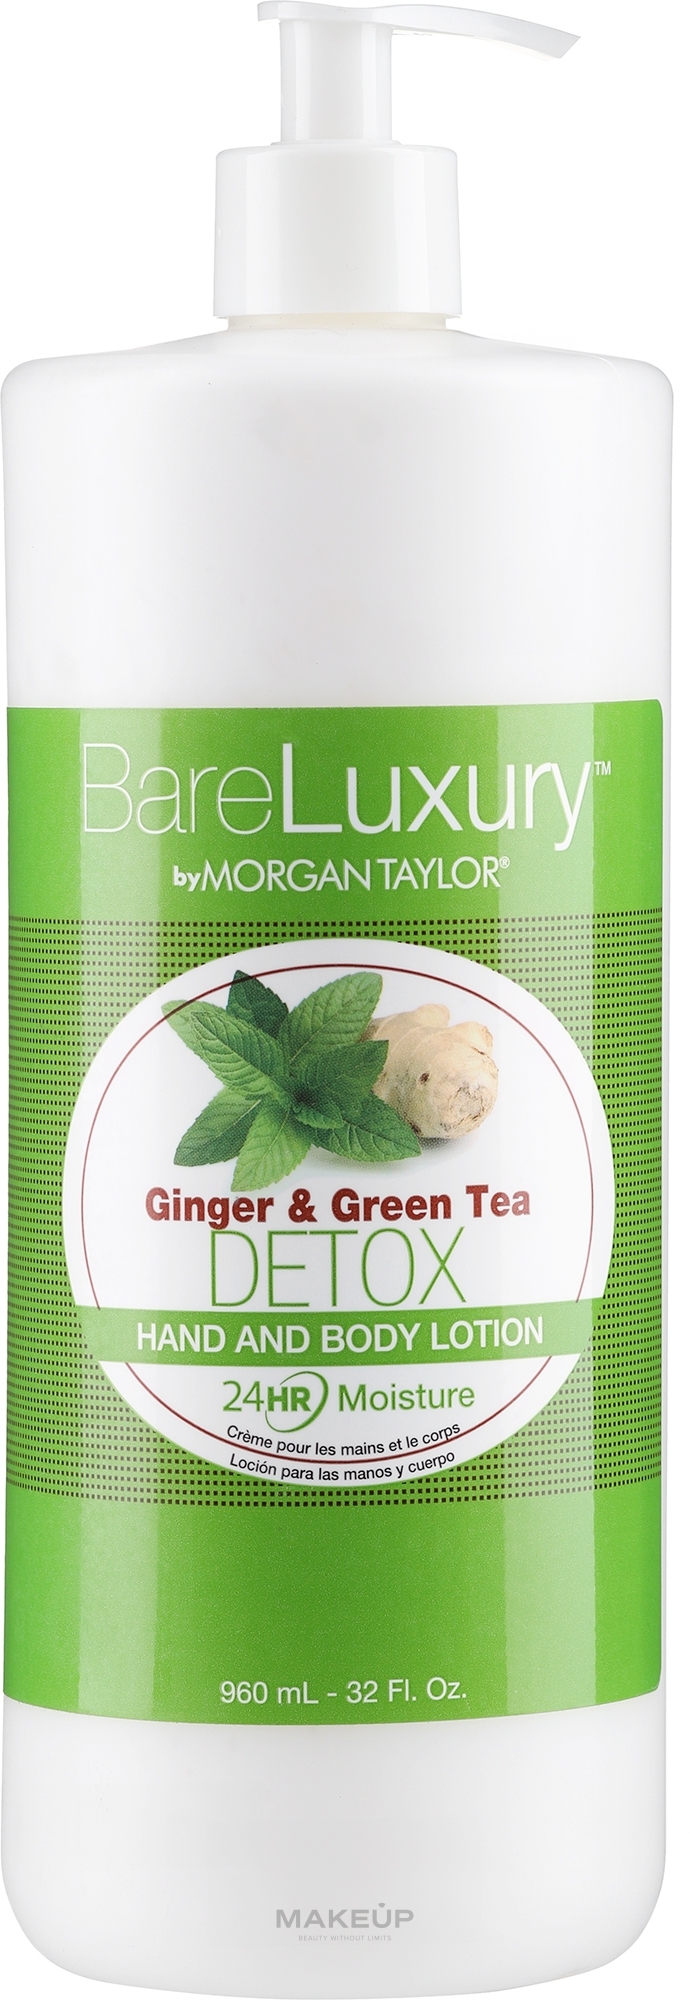 Лосьйон для рук і тіла "Імбир і зелений чай" - Morgan Taylor Bare Luxury Hand & Body Lotion Ginger & Green Tea Detox — фото 960ml